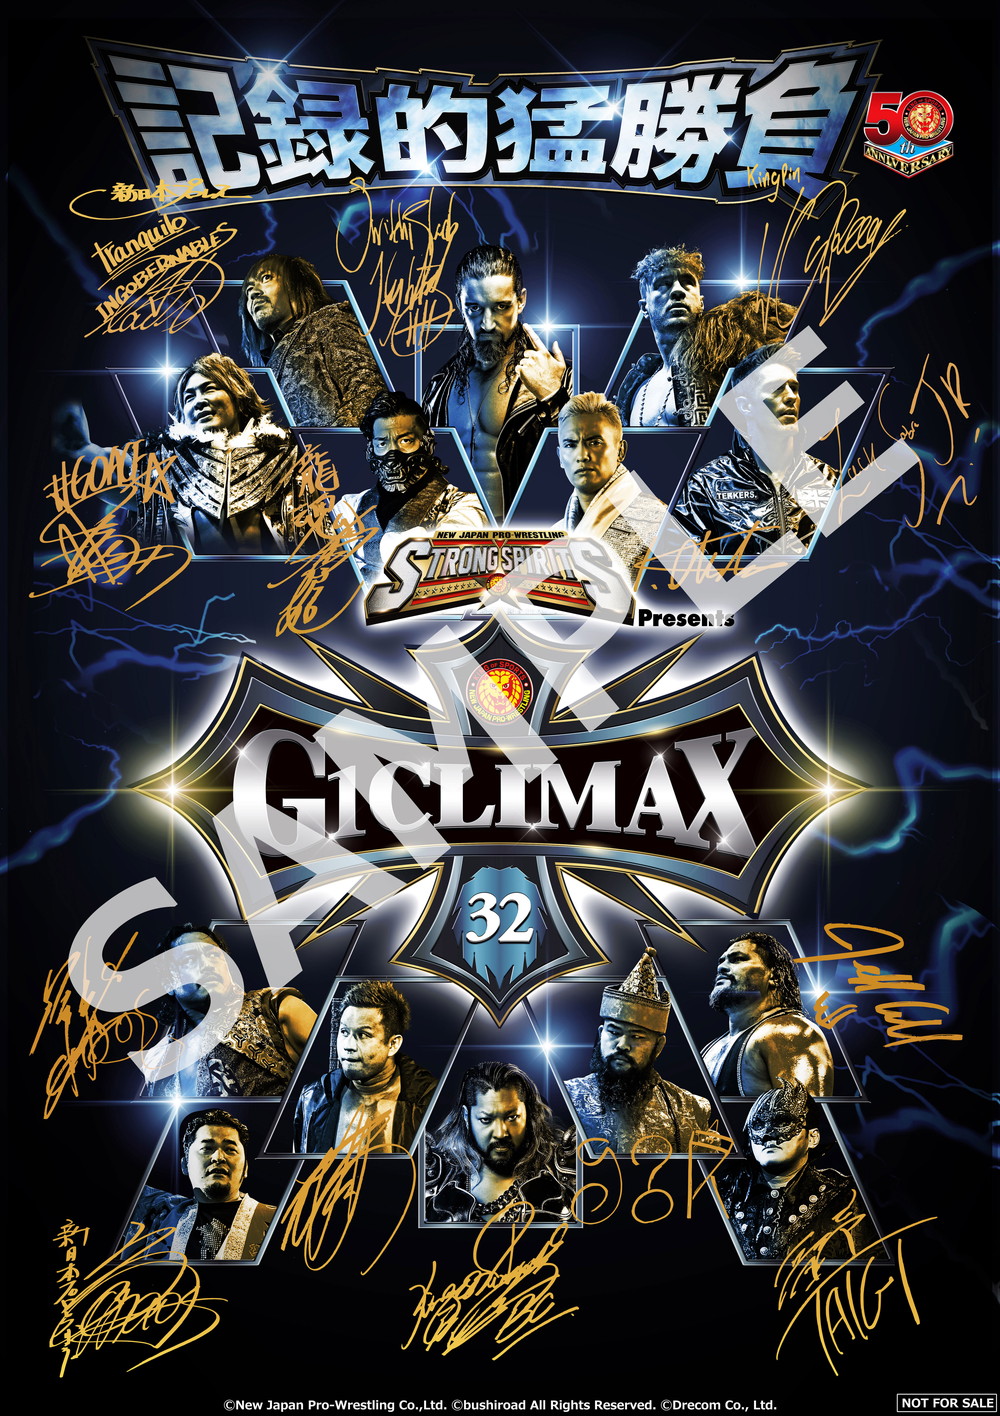 ブシロード、『新日本プロレスSTRONG SPIRITS』で夏の最強戦士決定戦『G1 CLIMAX 32』開催を記念したキャンペーン開催！